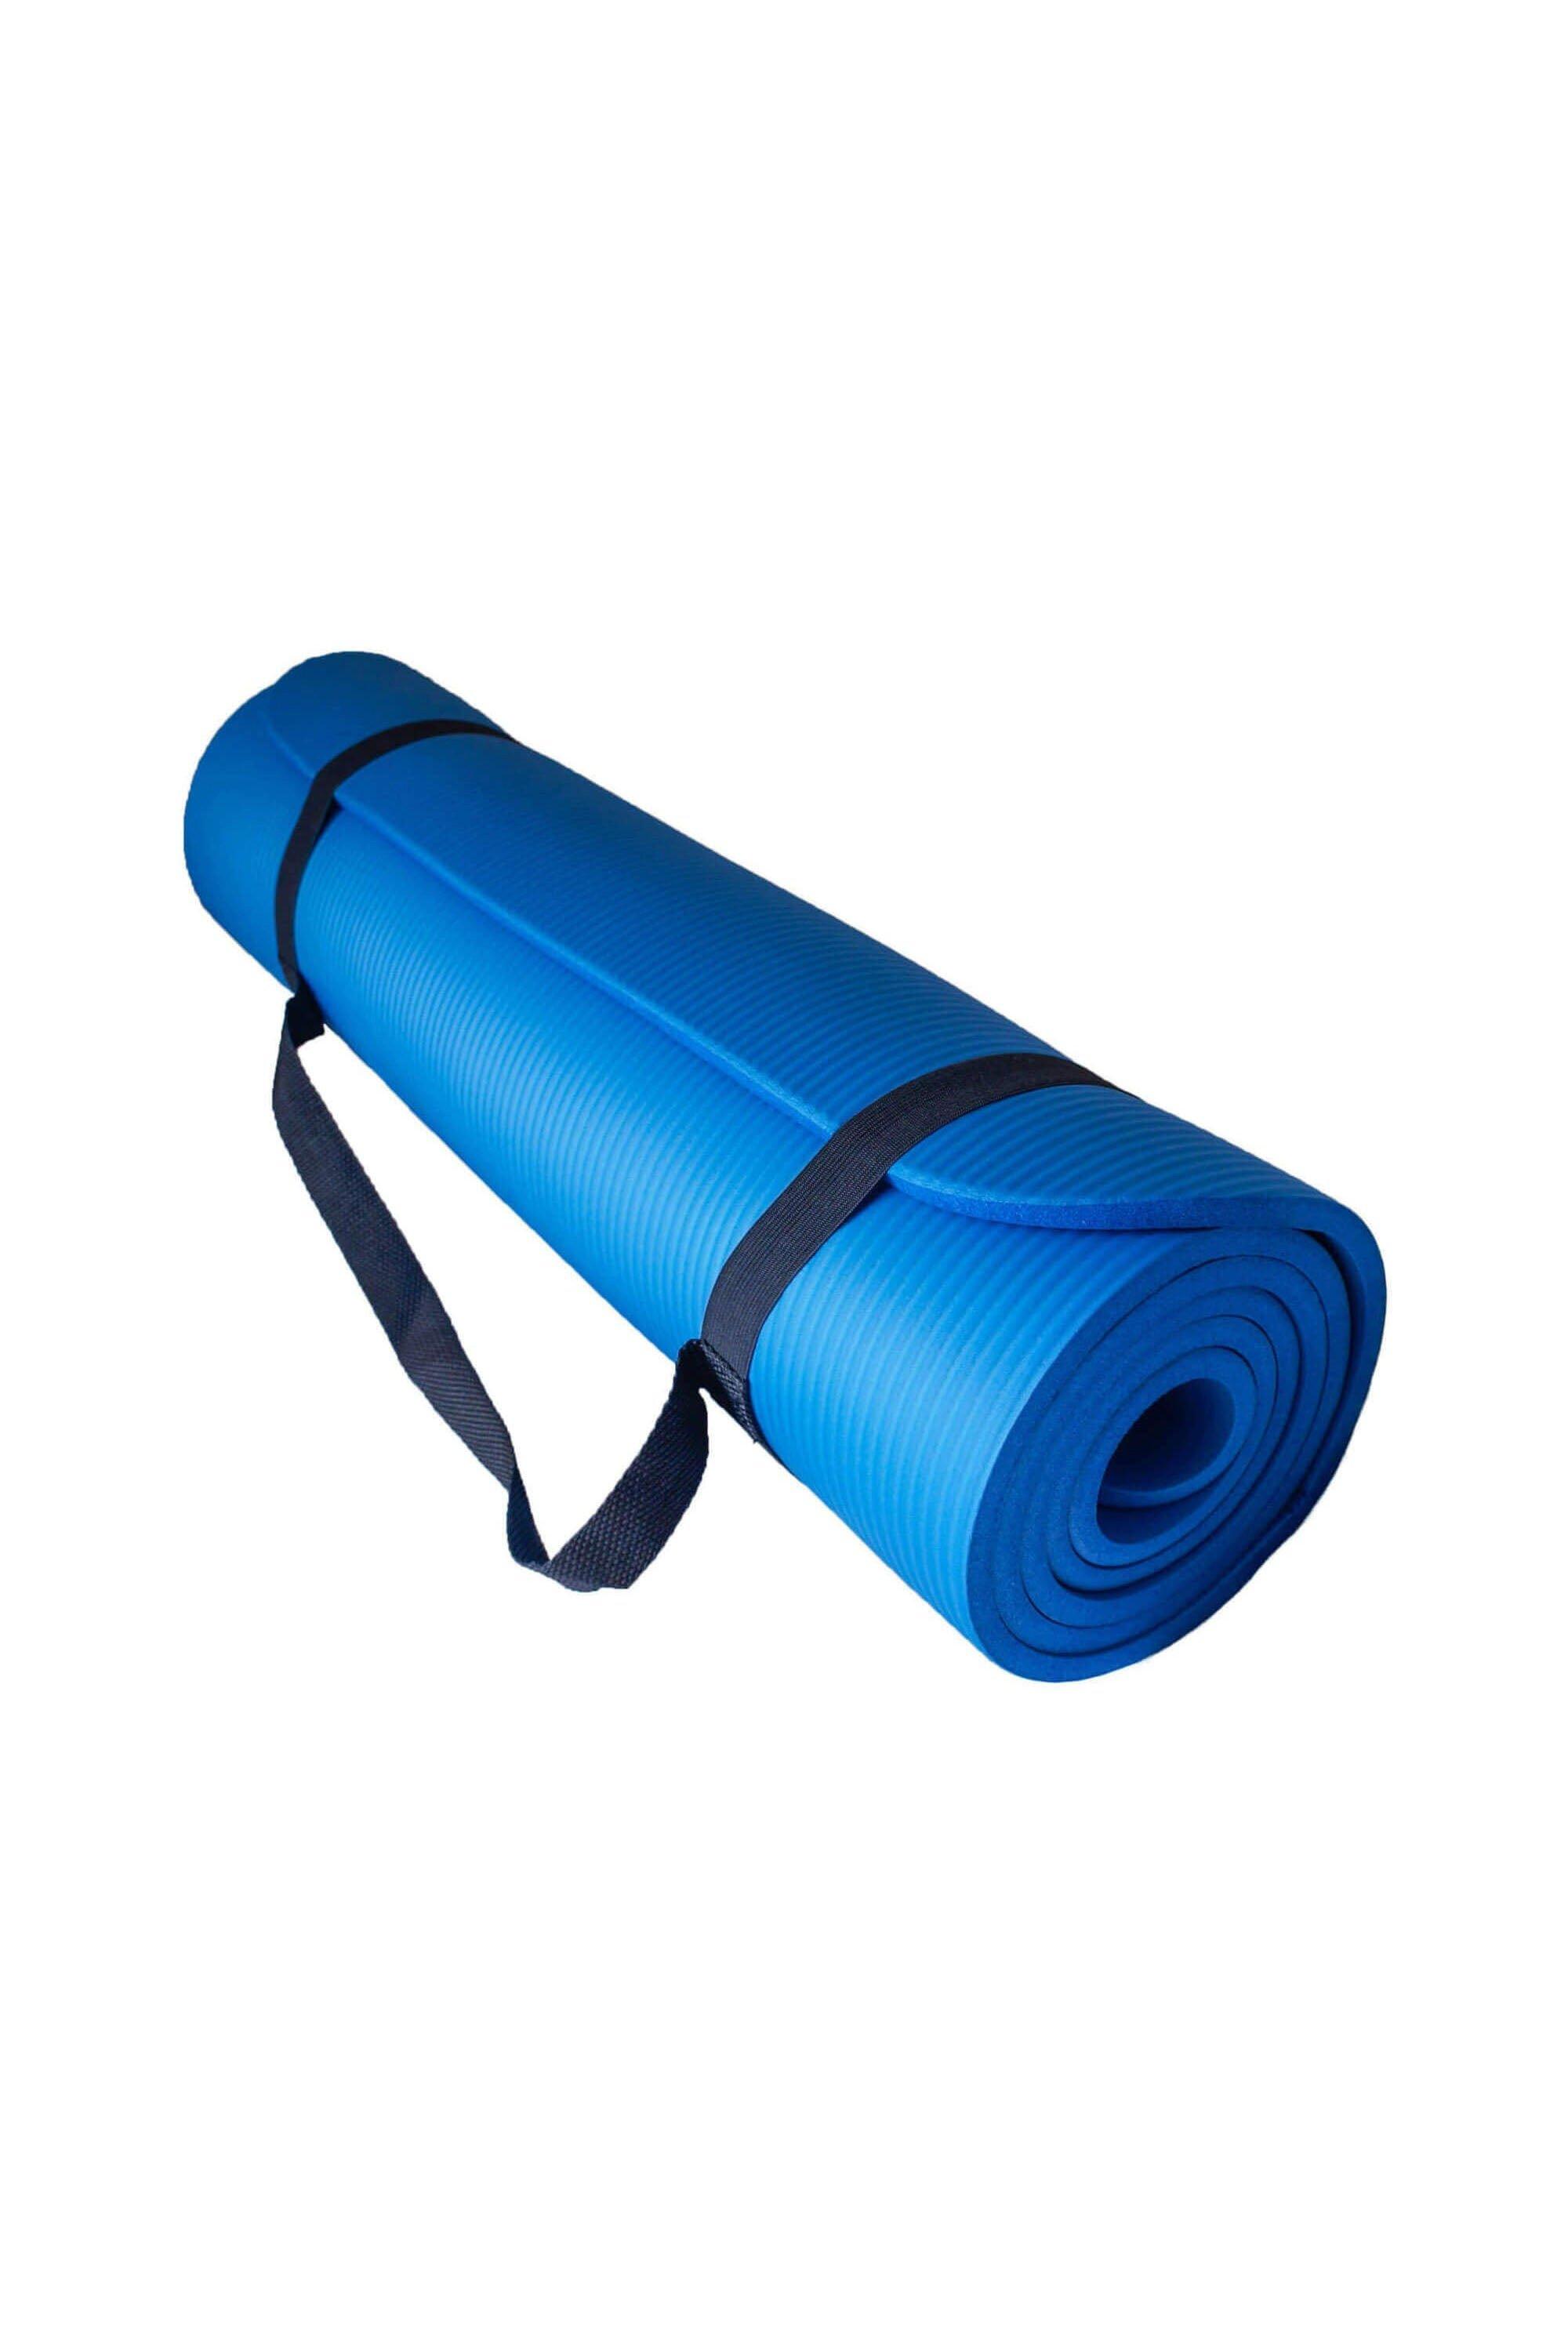 Мягкий коврик для упражнений для йоги с воздушным потоком 10 мм Azure, синий эспандер для йоги пилатеса женский эспандер для упражнений для дома